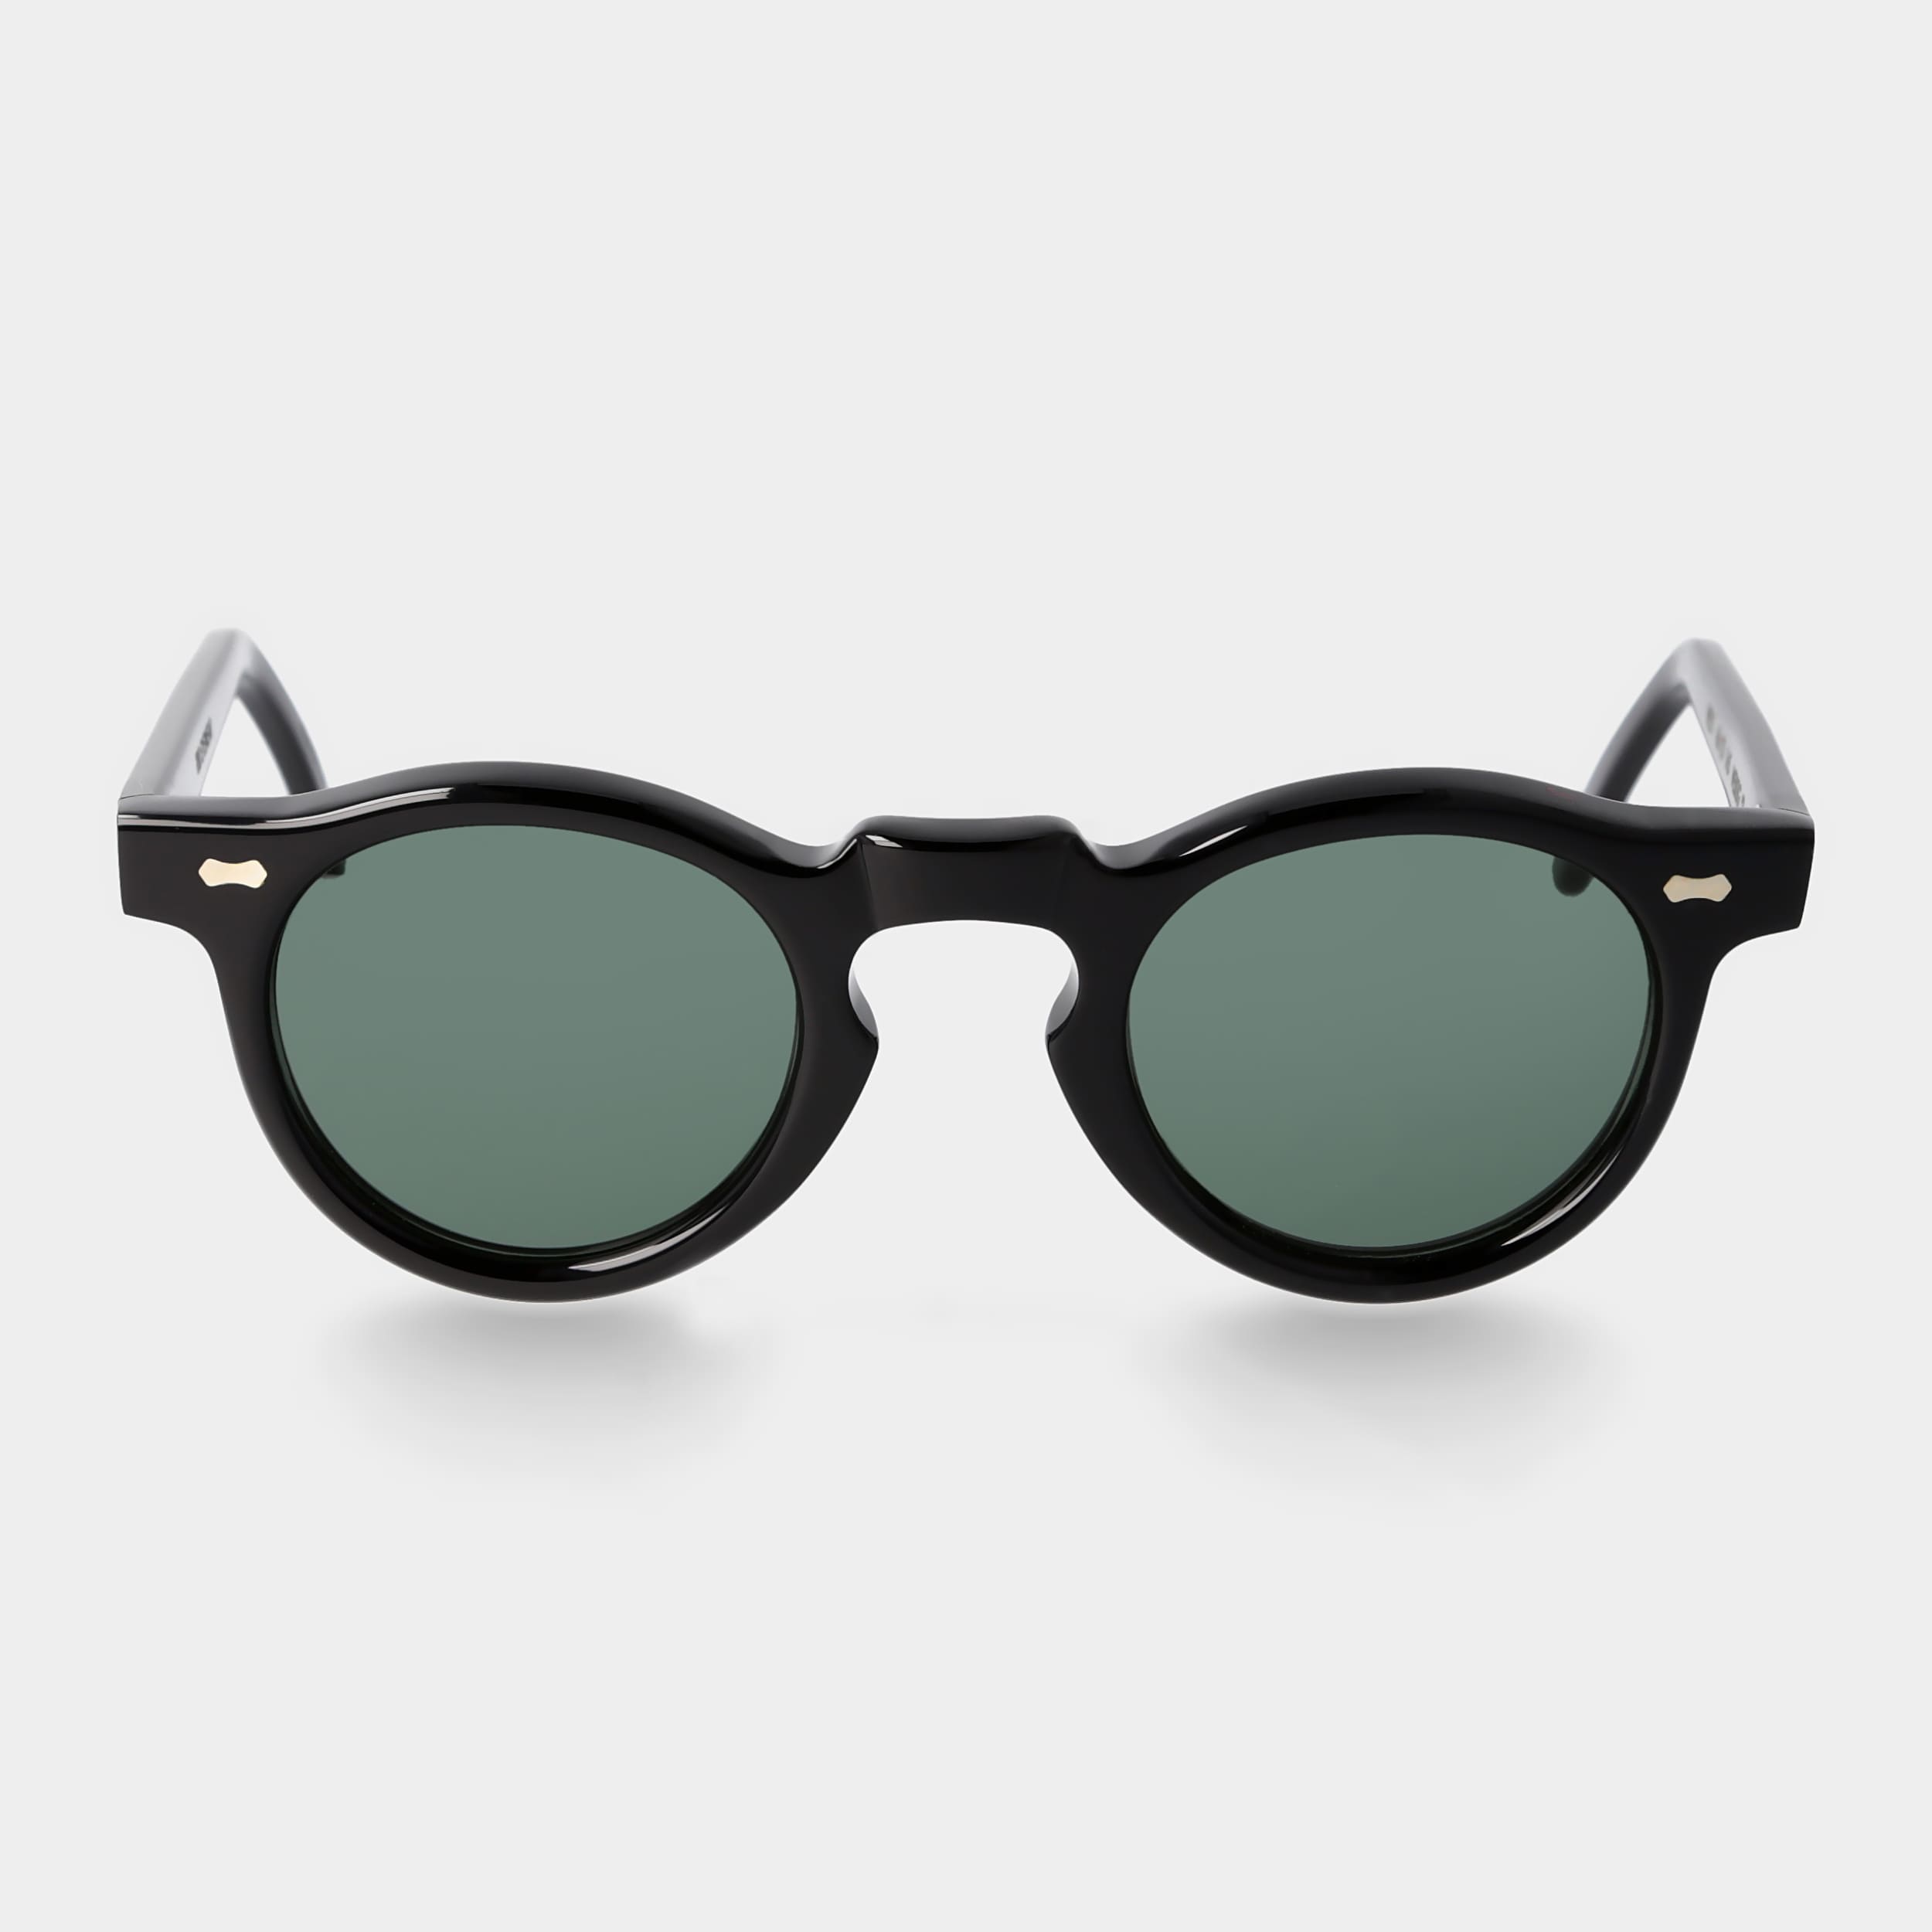 sunglasses-welt-eco-black-polarized-bottle-green-sustainable-tbd-eyewear-front